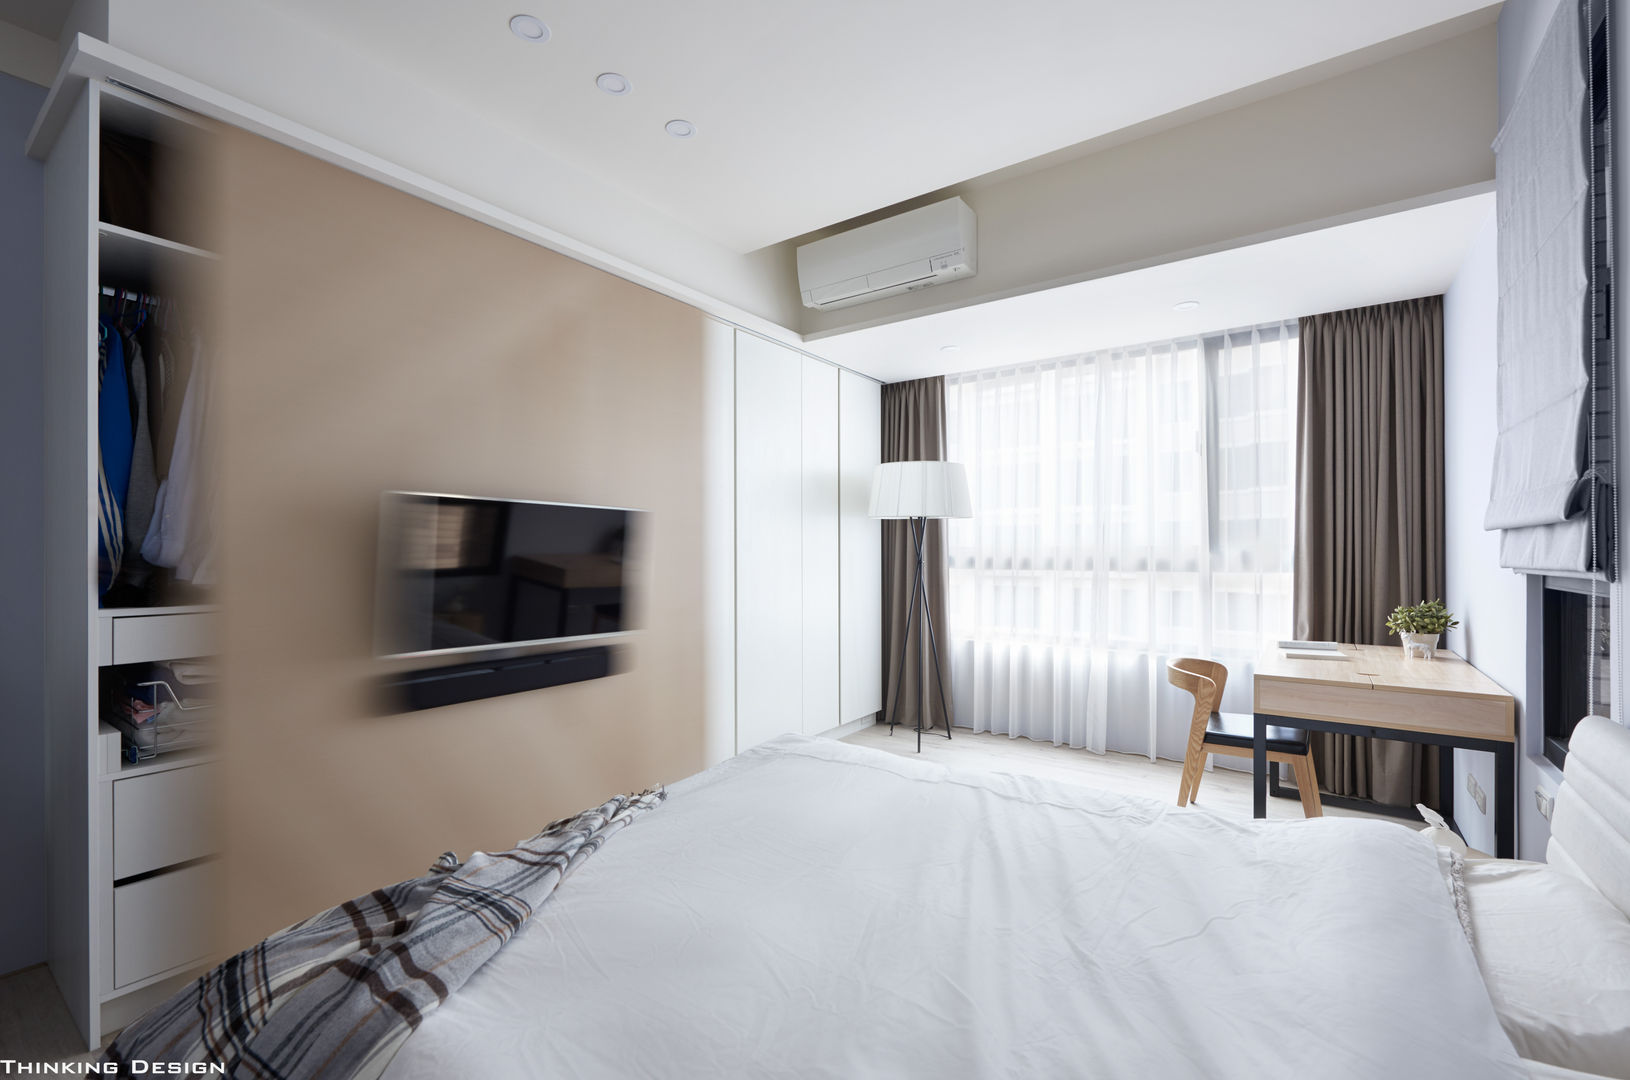 青釀, 思維空間設計 思維空間設計 Modern style bedroom